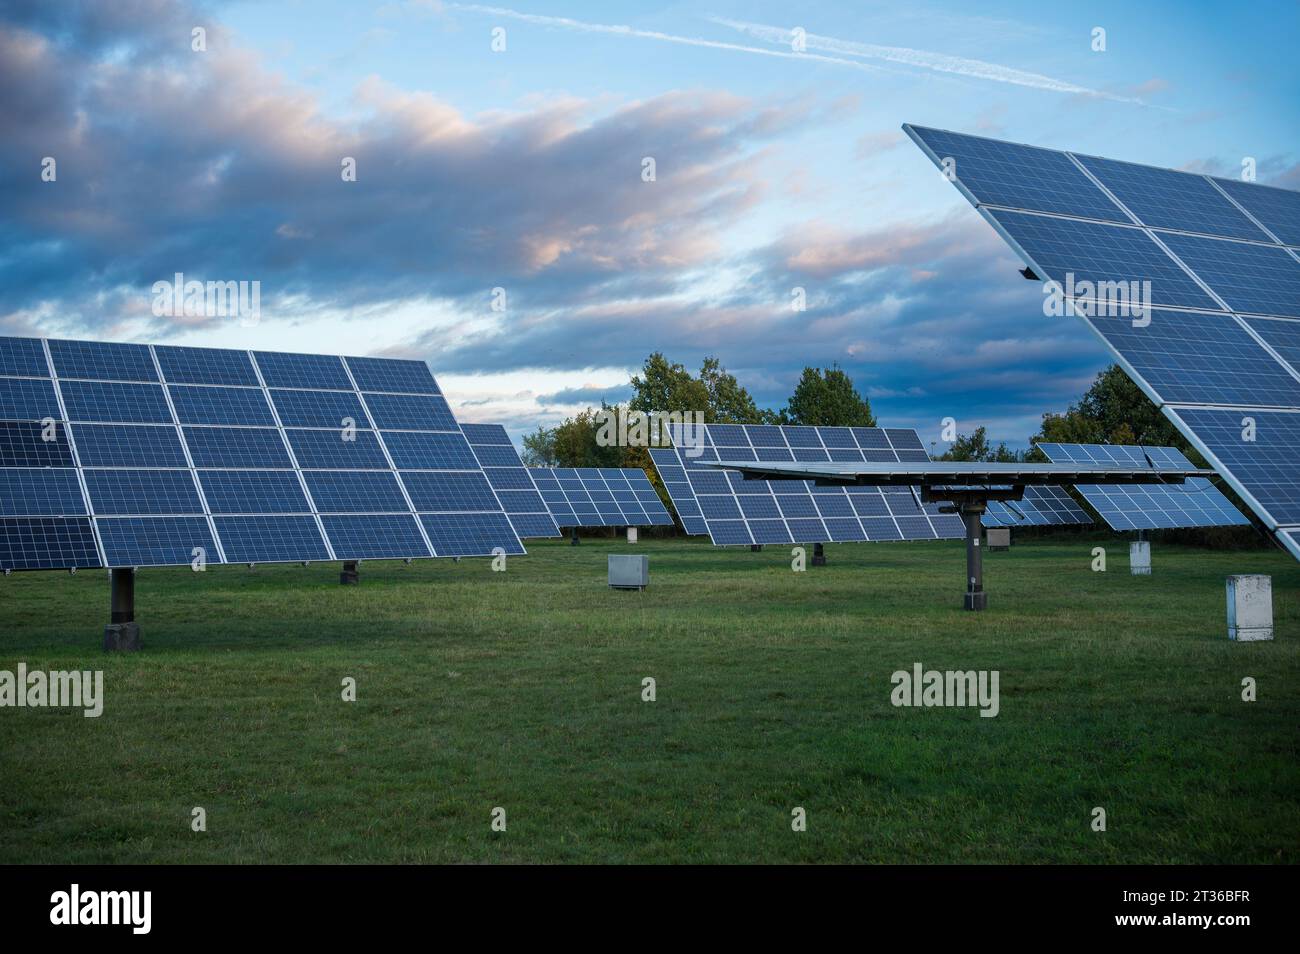 Solarpaneele, die der Position der Sonne durch Tracker folgen Stockfoto